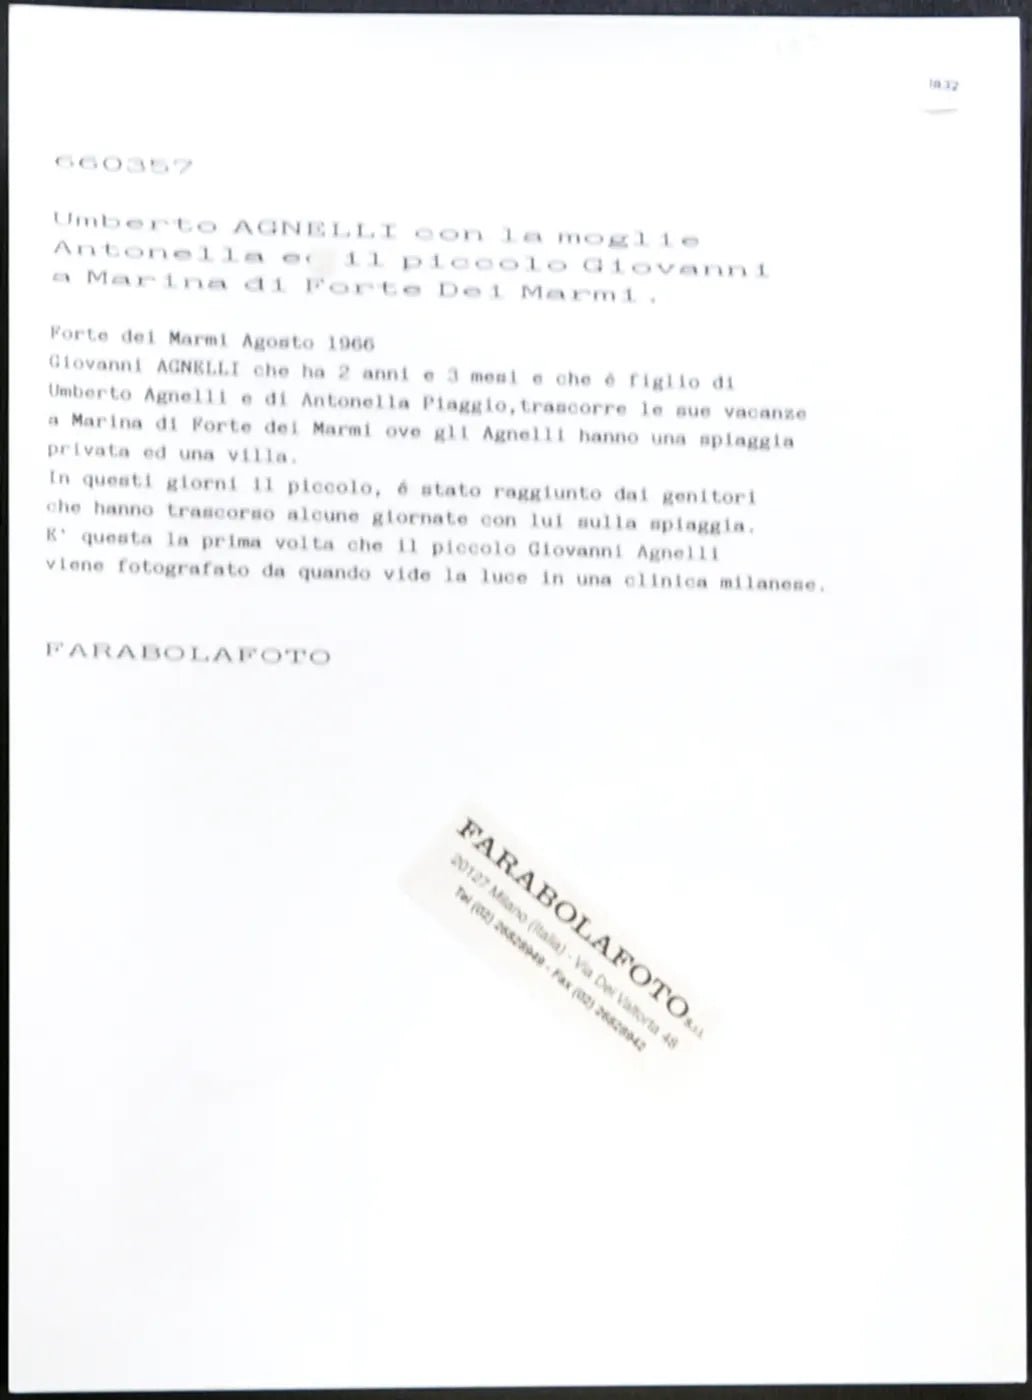 Antonella Piaggio e Giovanni Agnelli 1966 Ft 1832 - Stampa 24x18 cm - Farabola Stampa ai sali d'argento